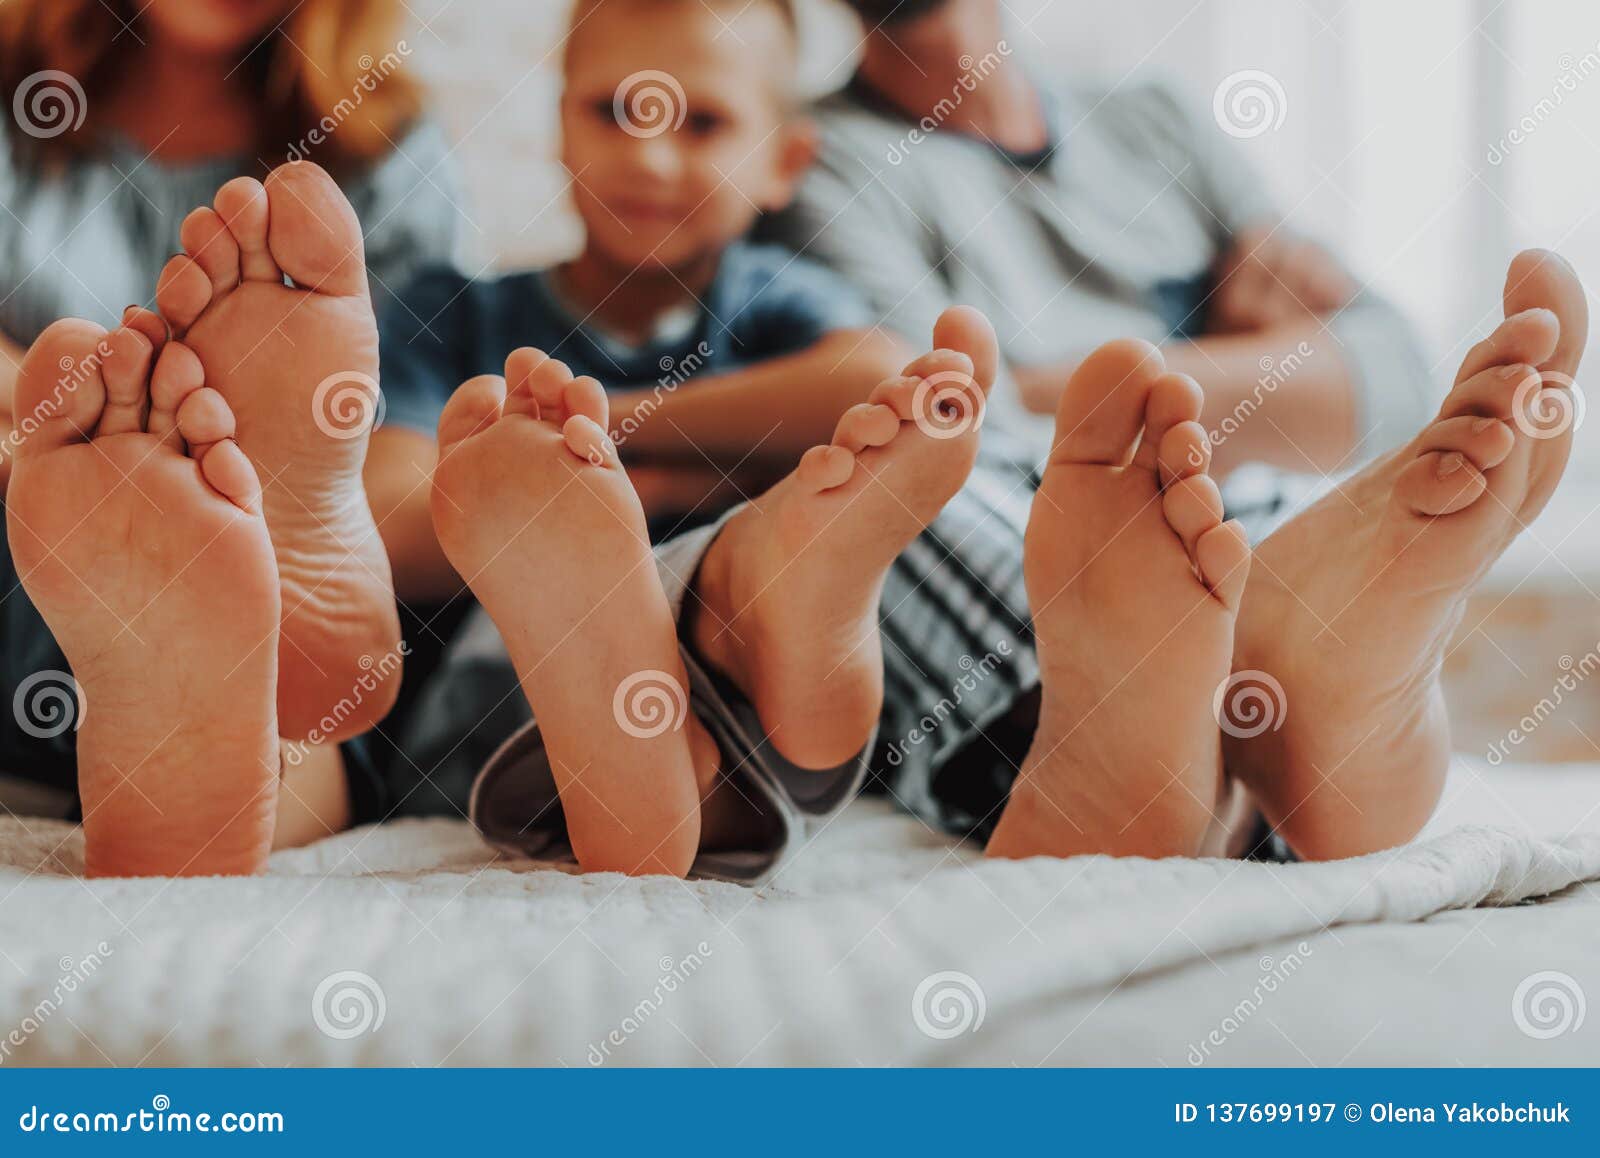 Family feet. Ступни счастливой семьи. Счастливые стопы. Три пары ног. Семейный foot.